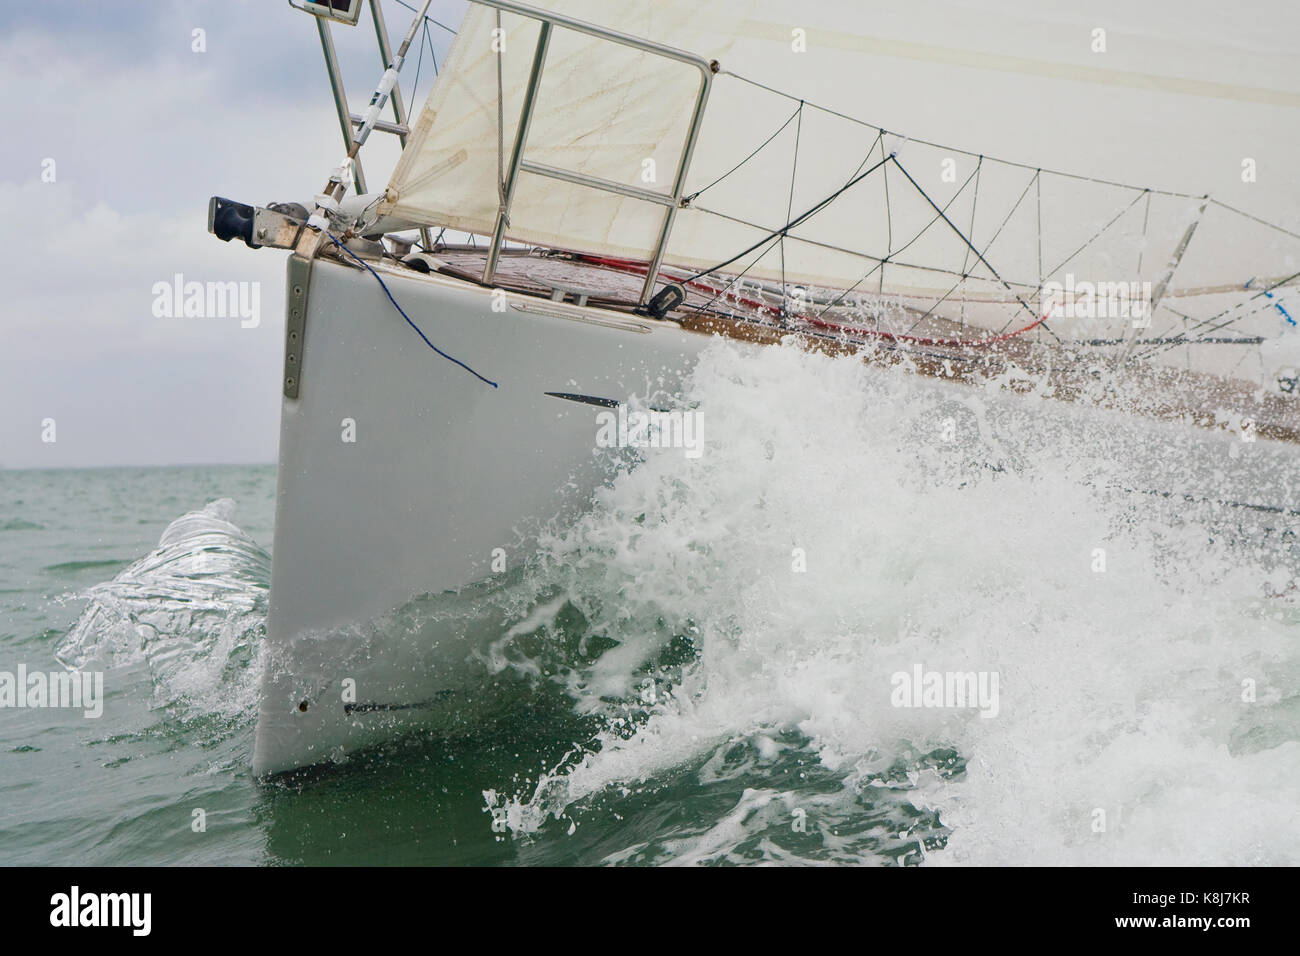 Close up bow and wave of a sailing boat, sail boat or yacht at sea Stock Photo